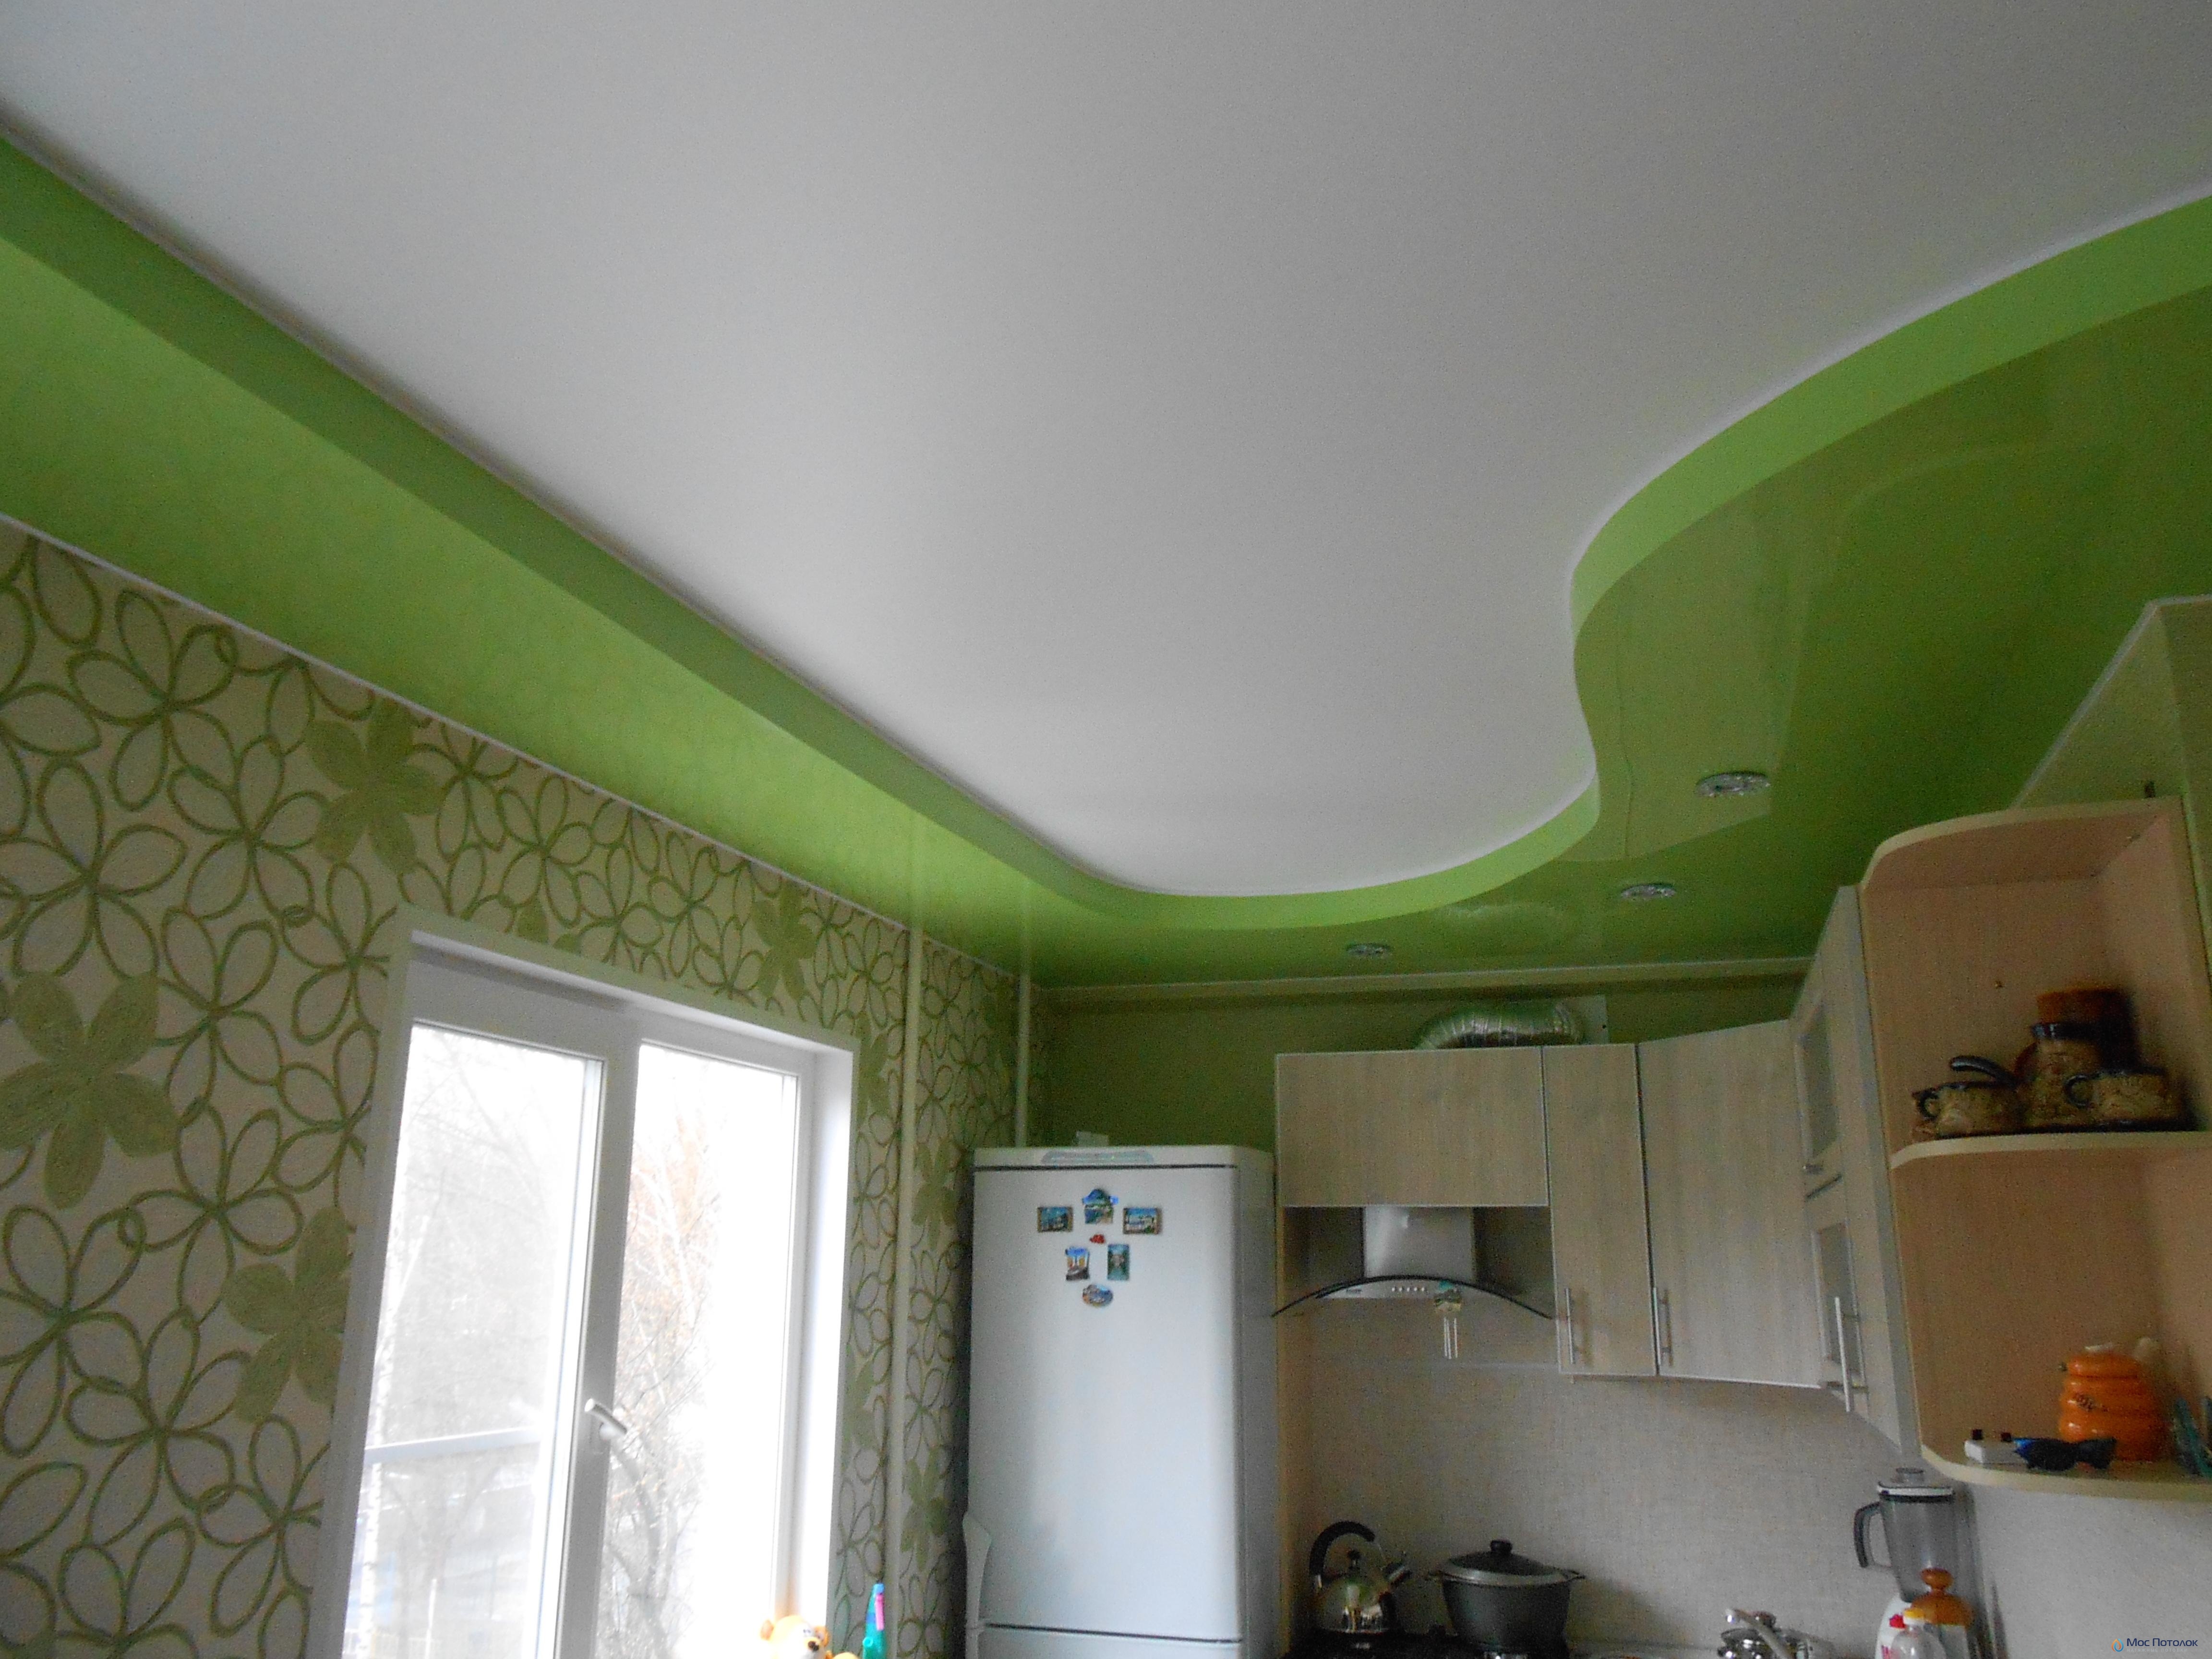 Натяжной потолок зеленого цвета – природная гармония в вашем доме